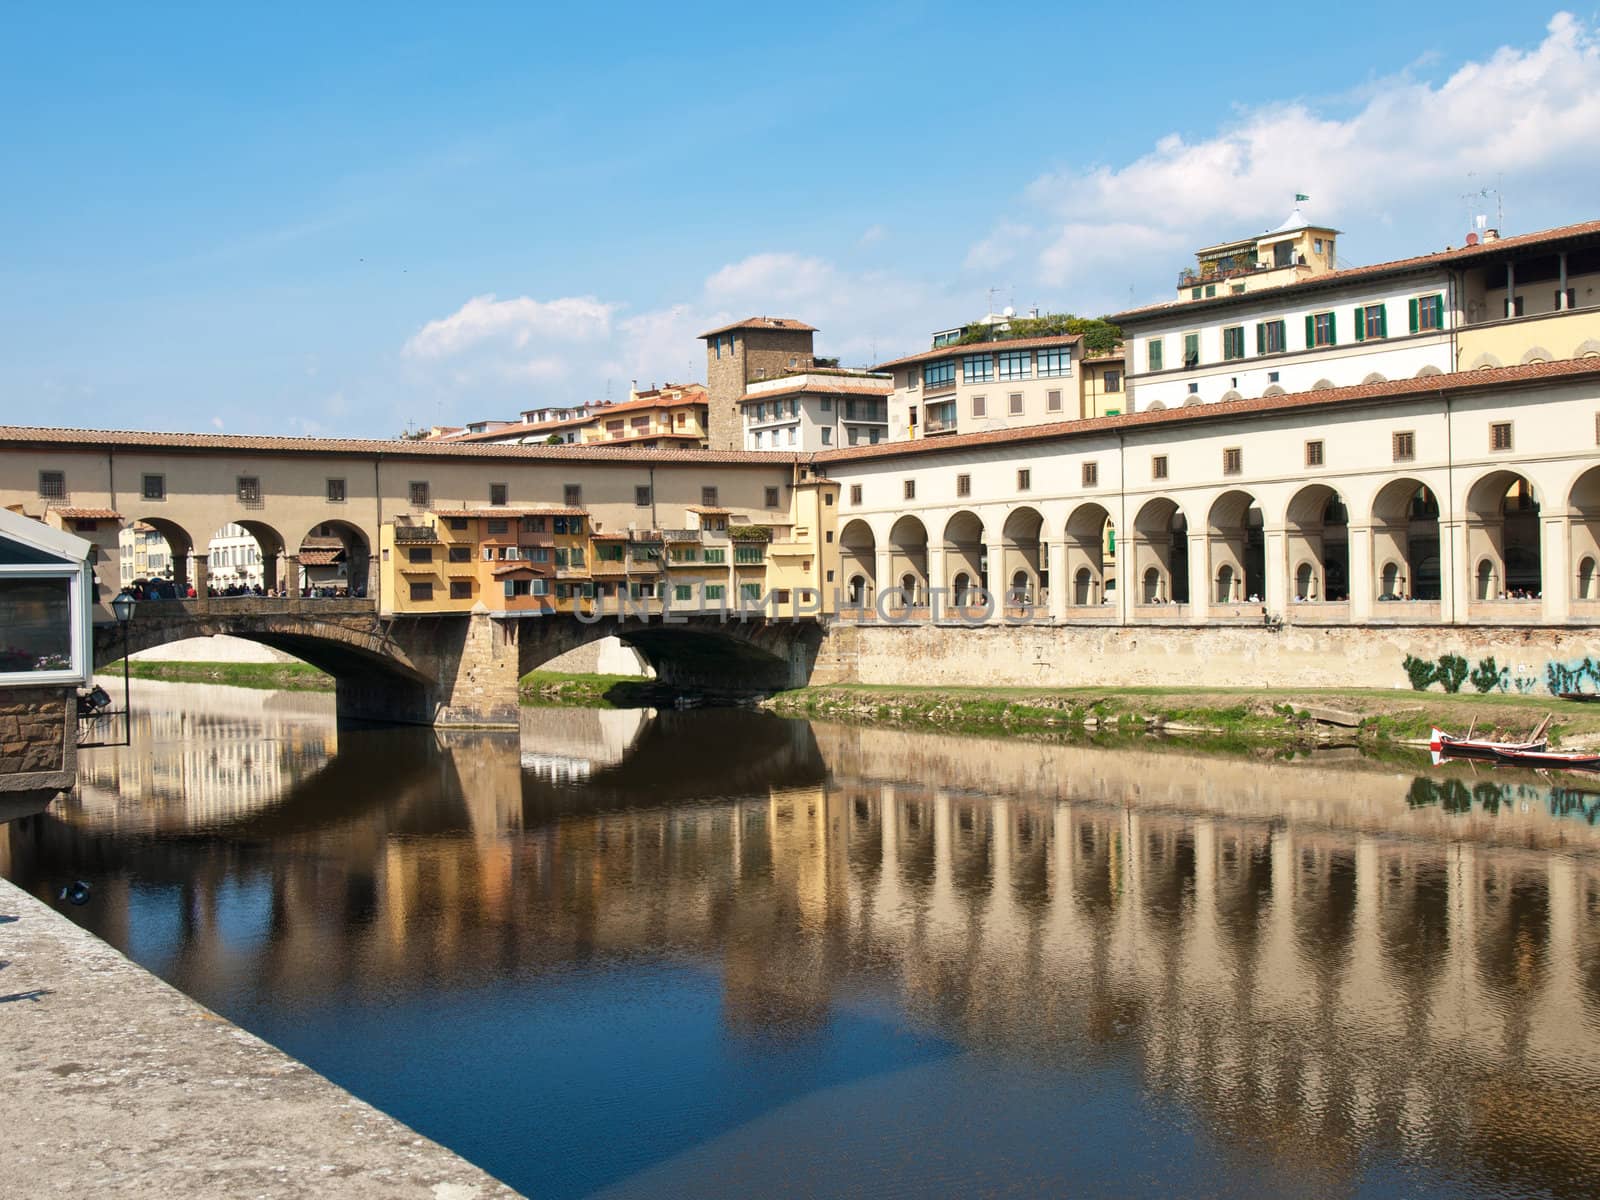 Ponte Vecchio by nevenm